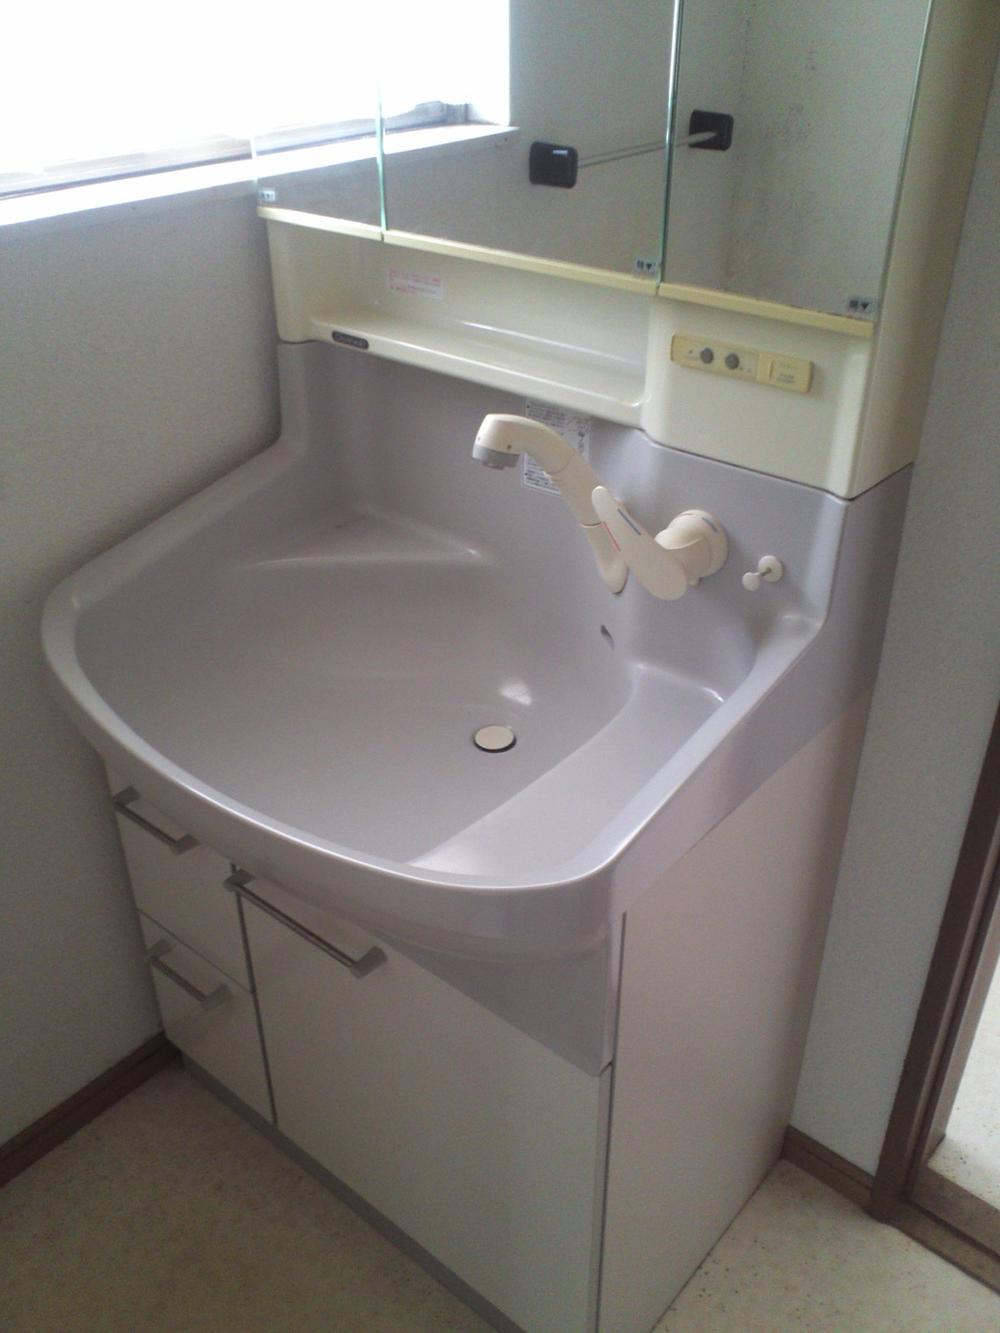 Wash basin, toilet. First floor basin